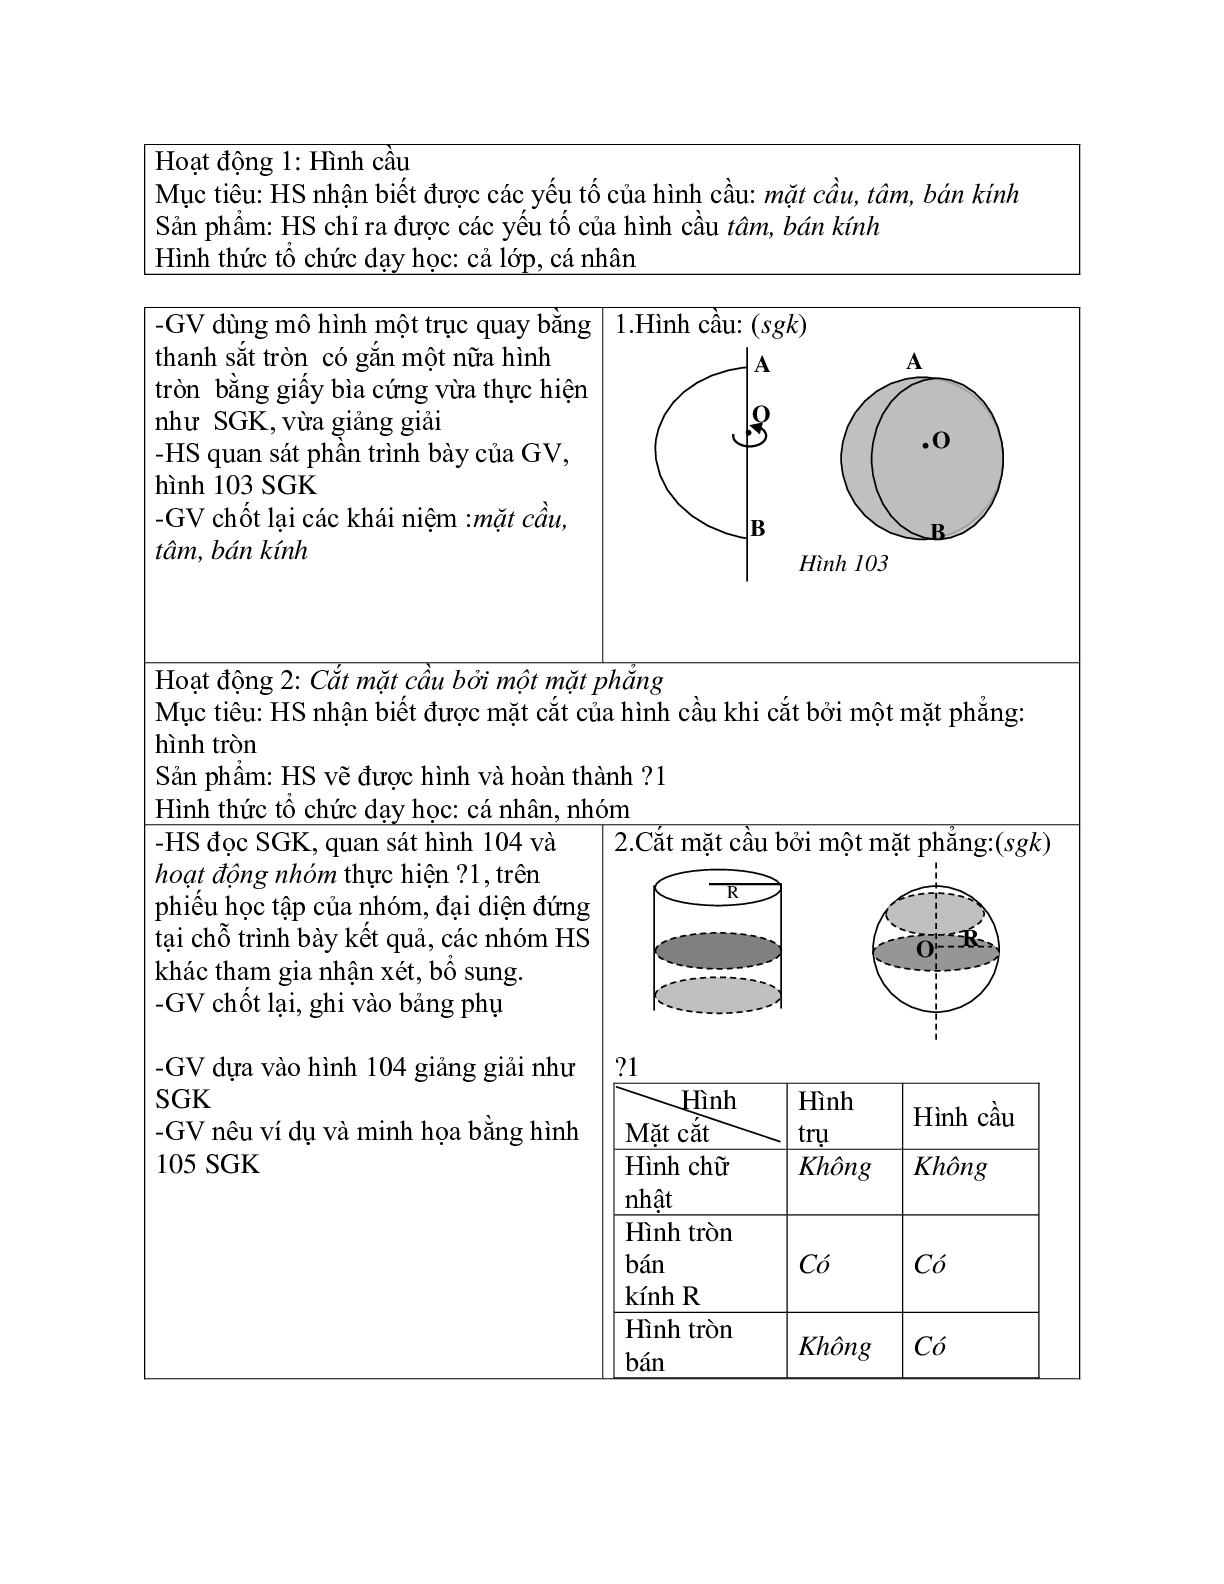 Giáo án Hình học 9 chương 4 bài 3: Hình cầu - Diện tích mặt cầu và thể tích hình cầu mới nhất (trang 2)